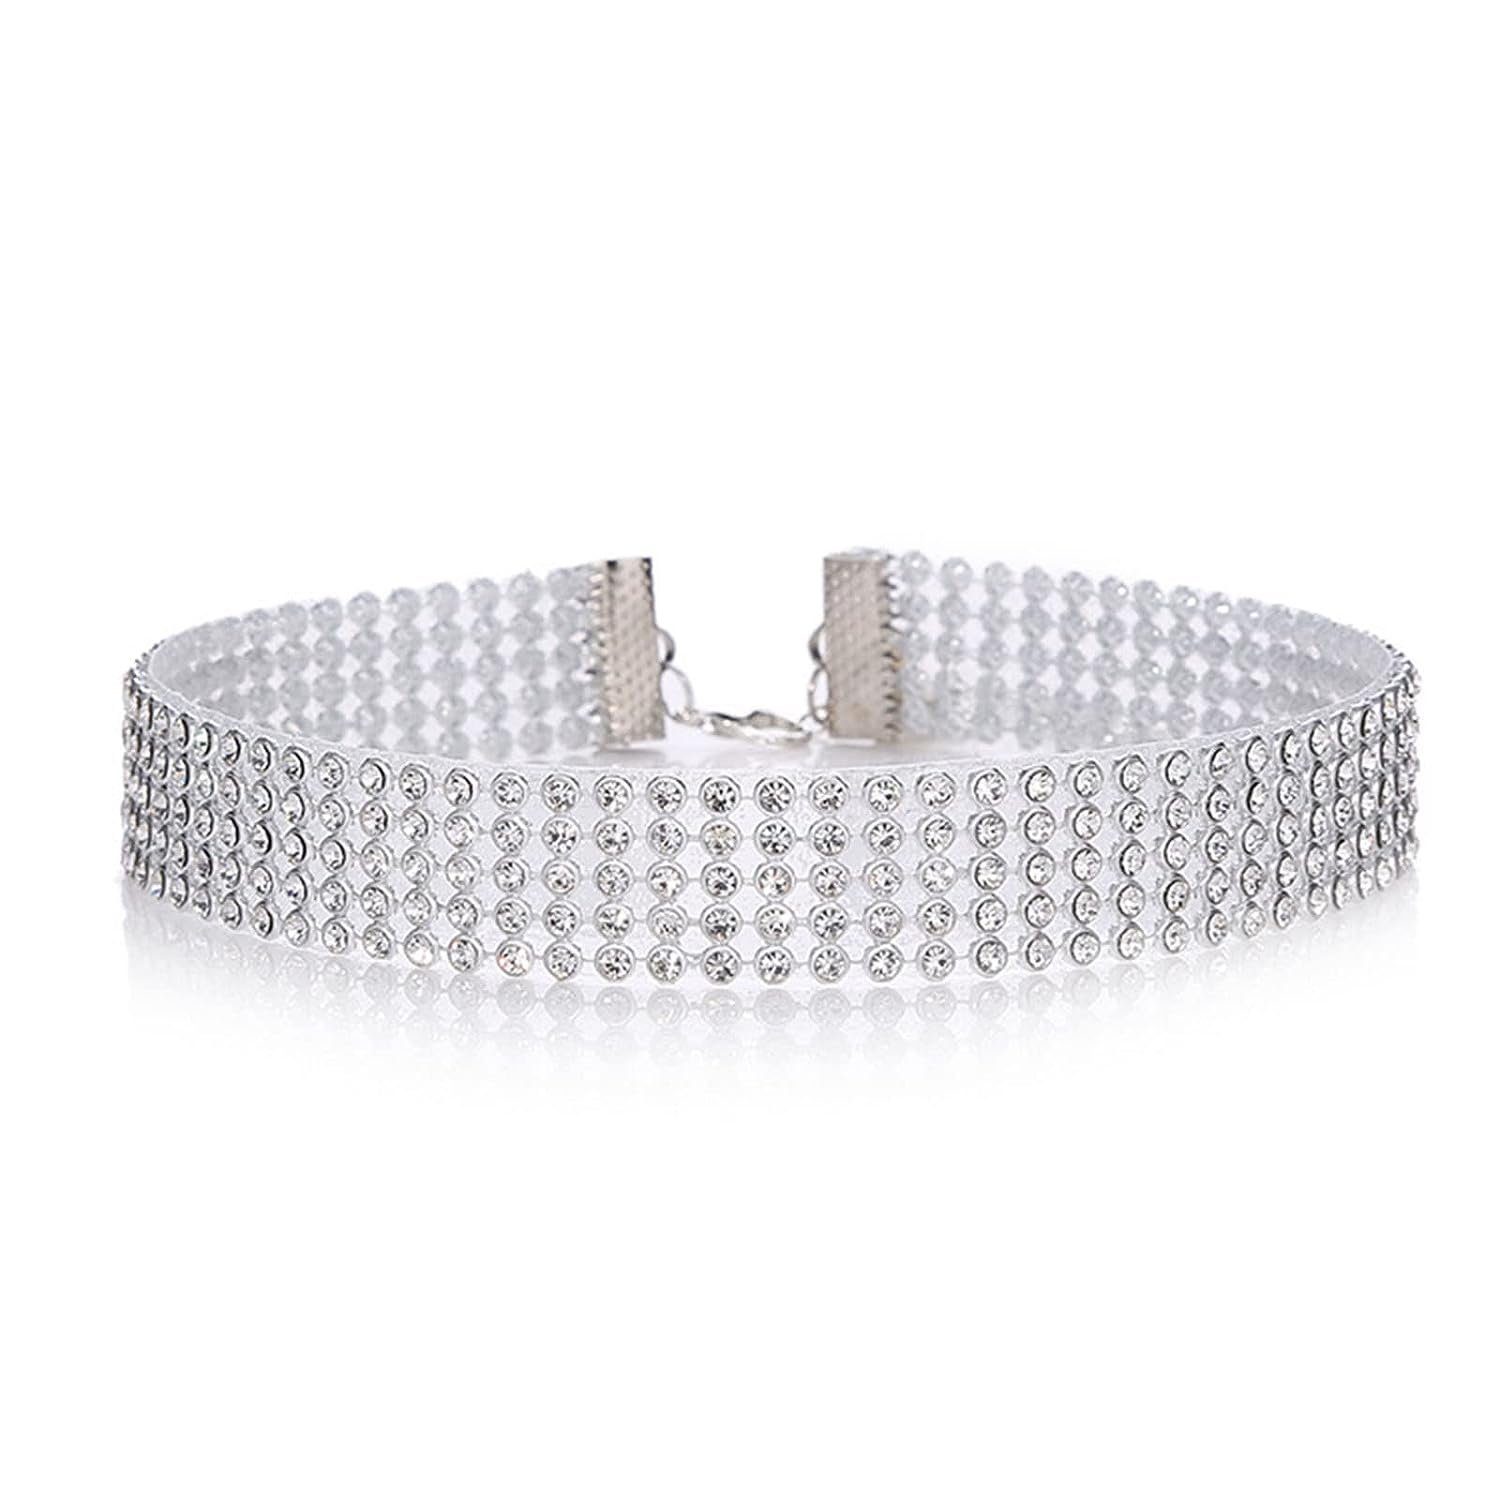 WaKuKa Choker Breite Kristallkette Halskette Schicht Silber Mädchen Schmuck Geschenk